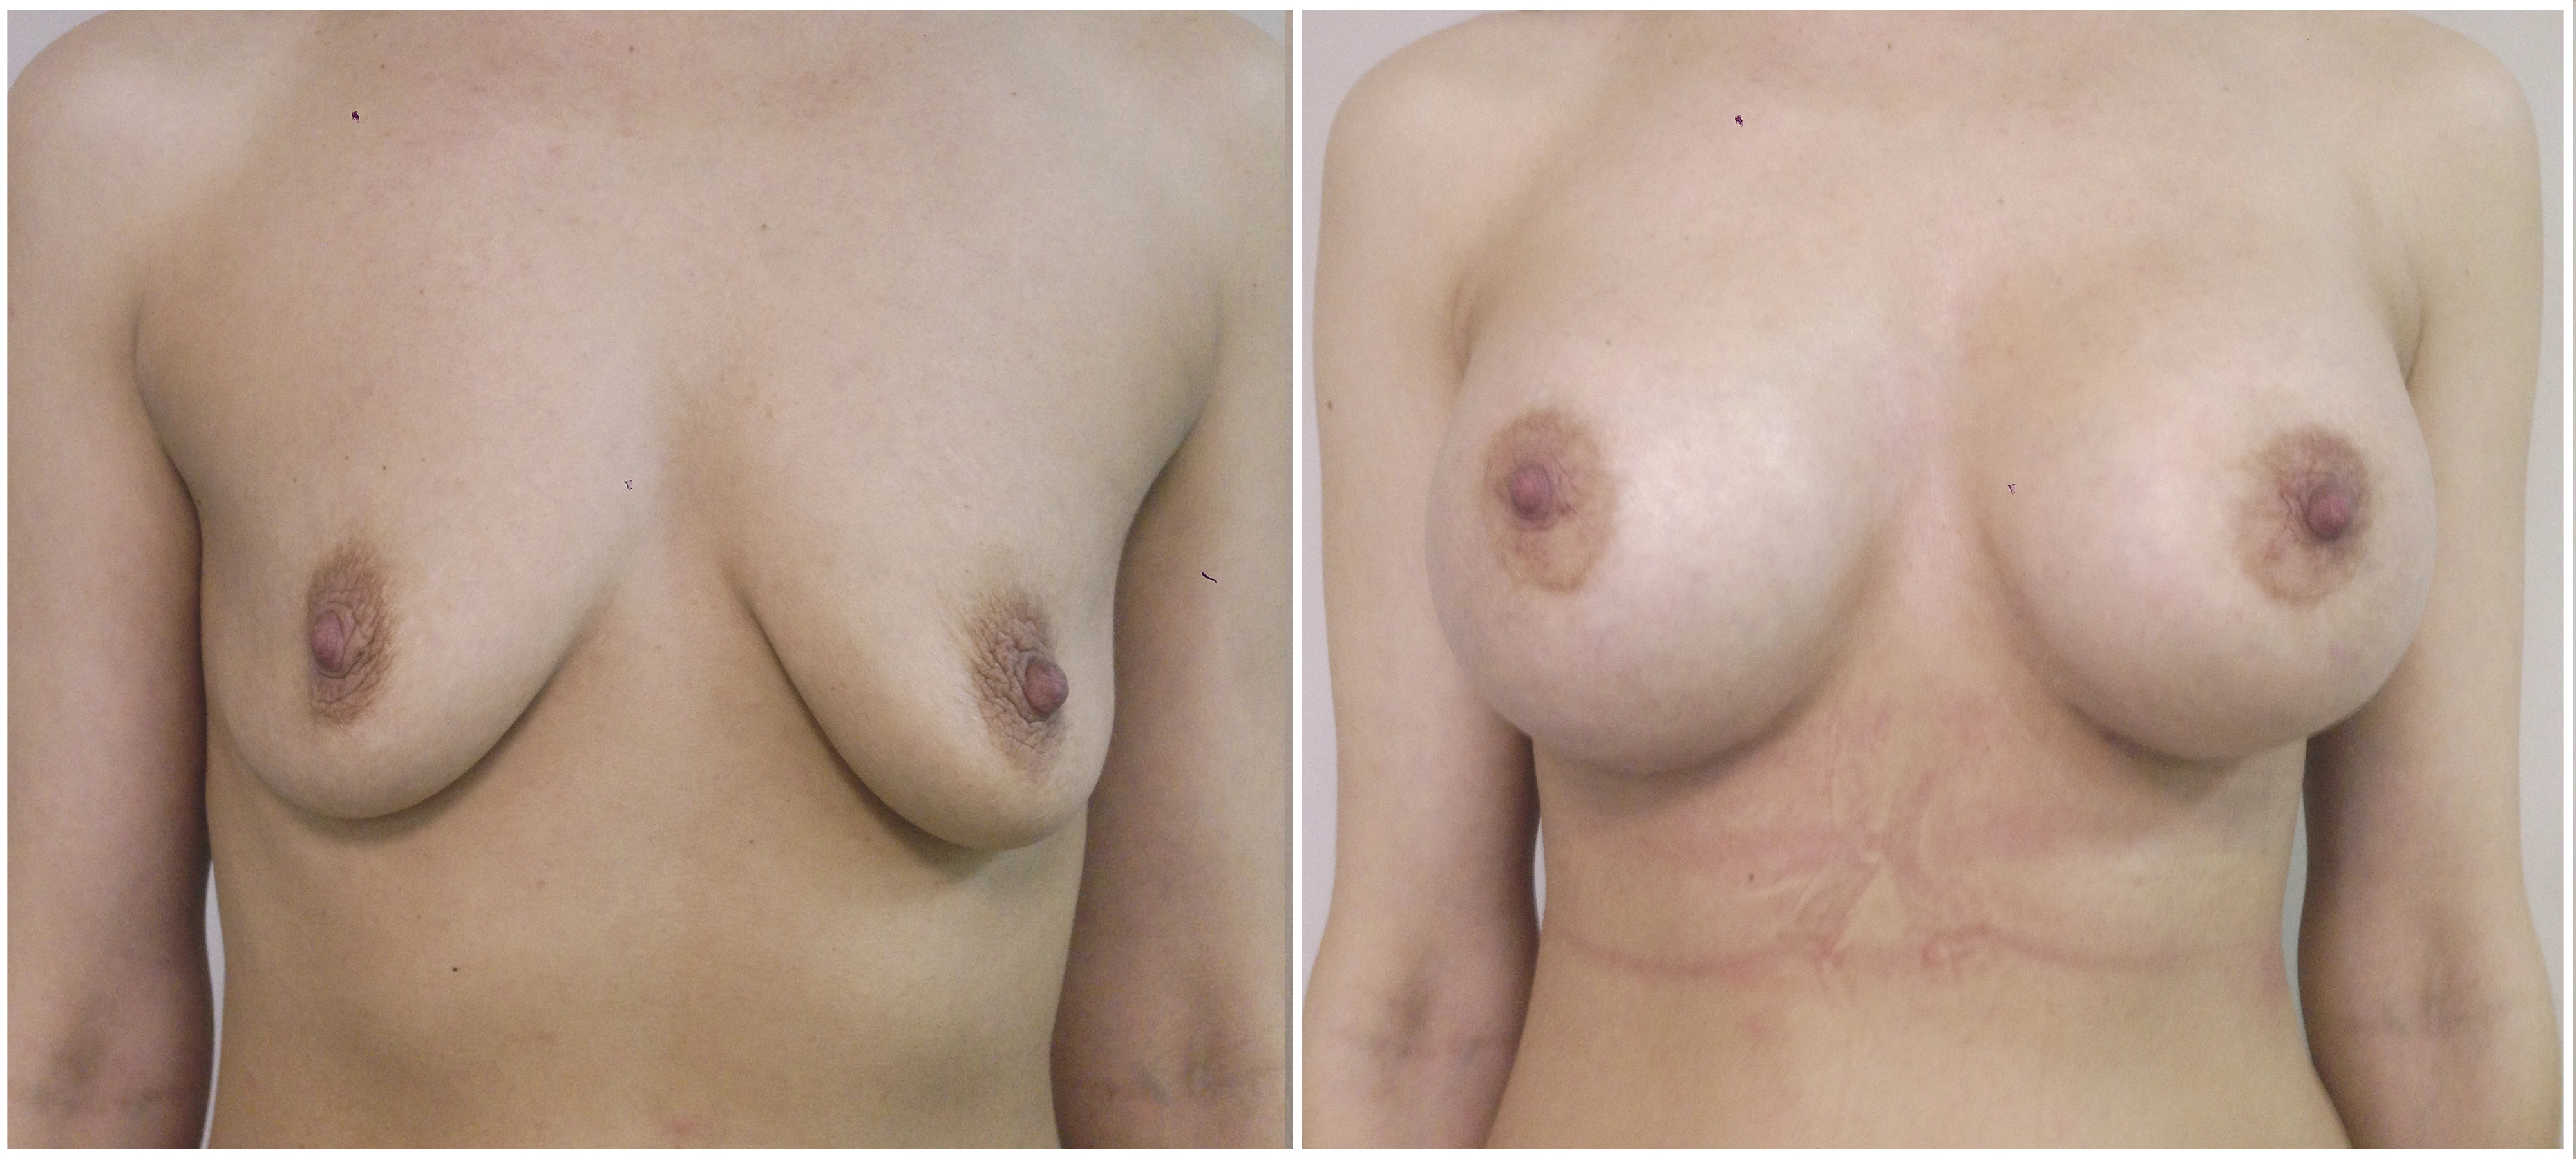 Трансаксиллярное увеличение груди имплантами. 6 месяцев после операции. Хирург:  Коваль Сергей Николаевич